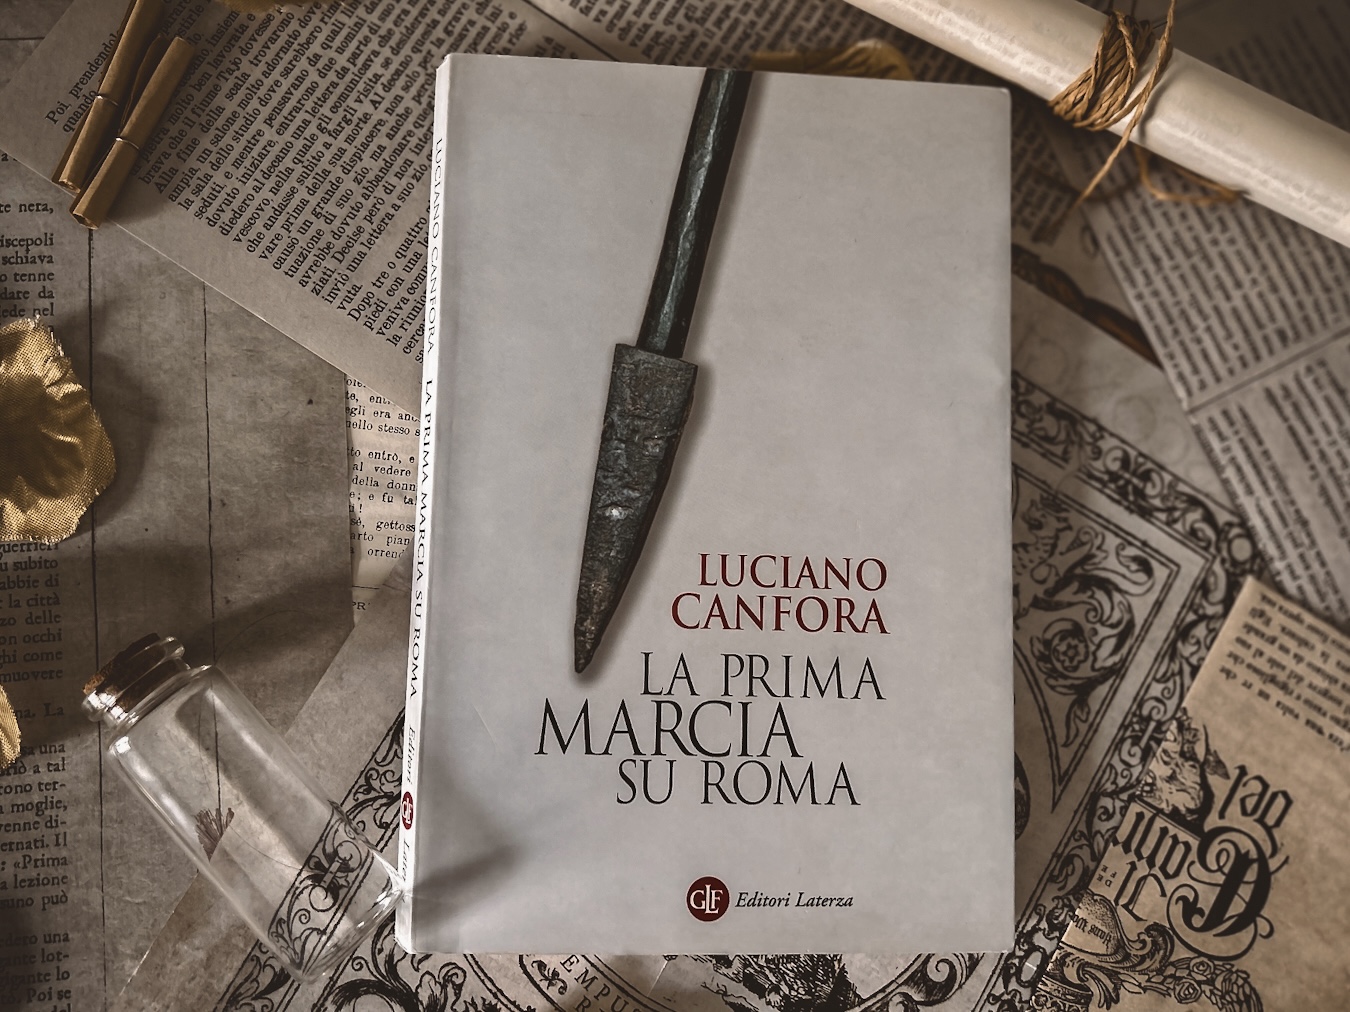 Il saggio di Luciano Canfora, La prima marcia su Roma, pubblicato da Editori Laterza (2007) 